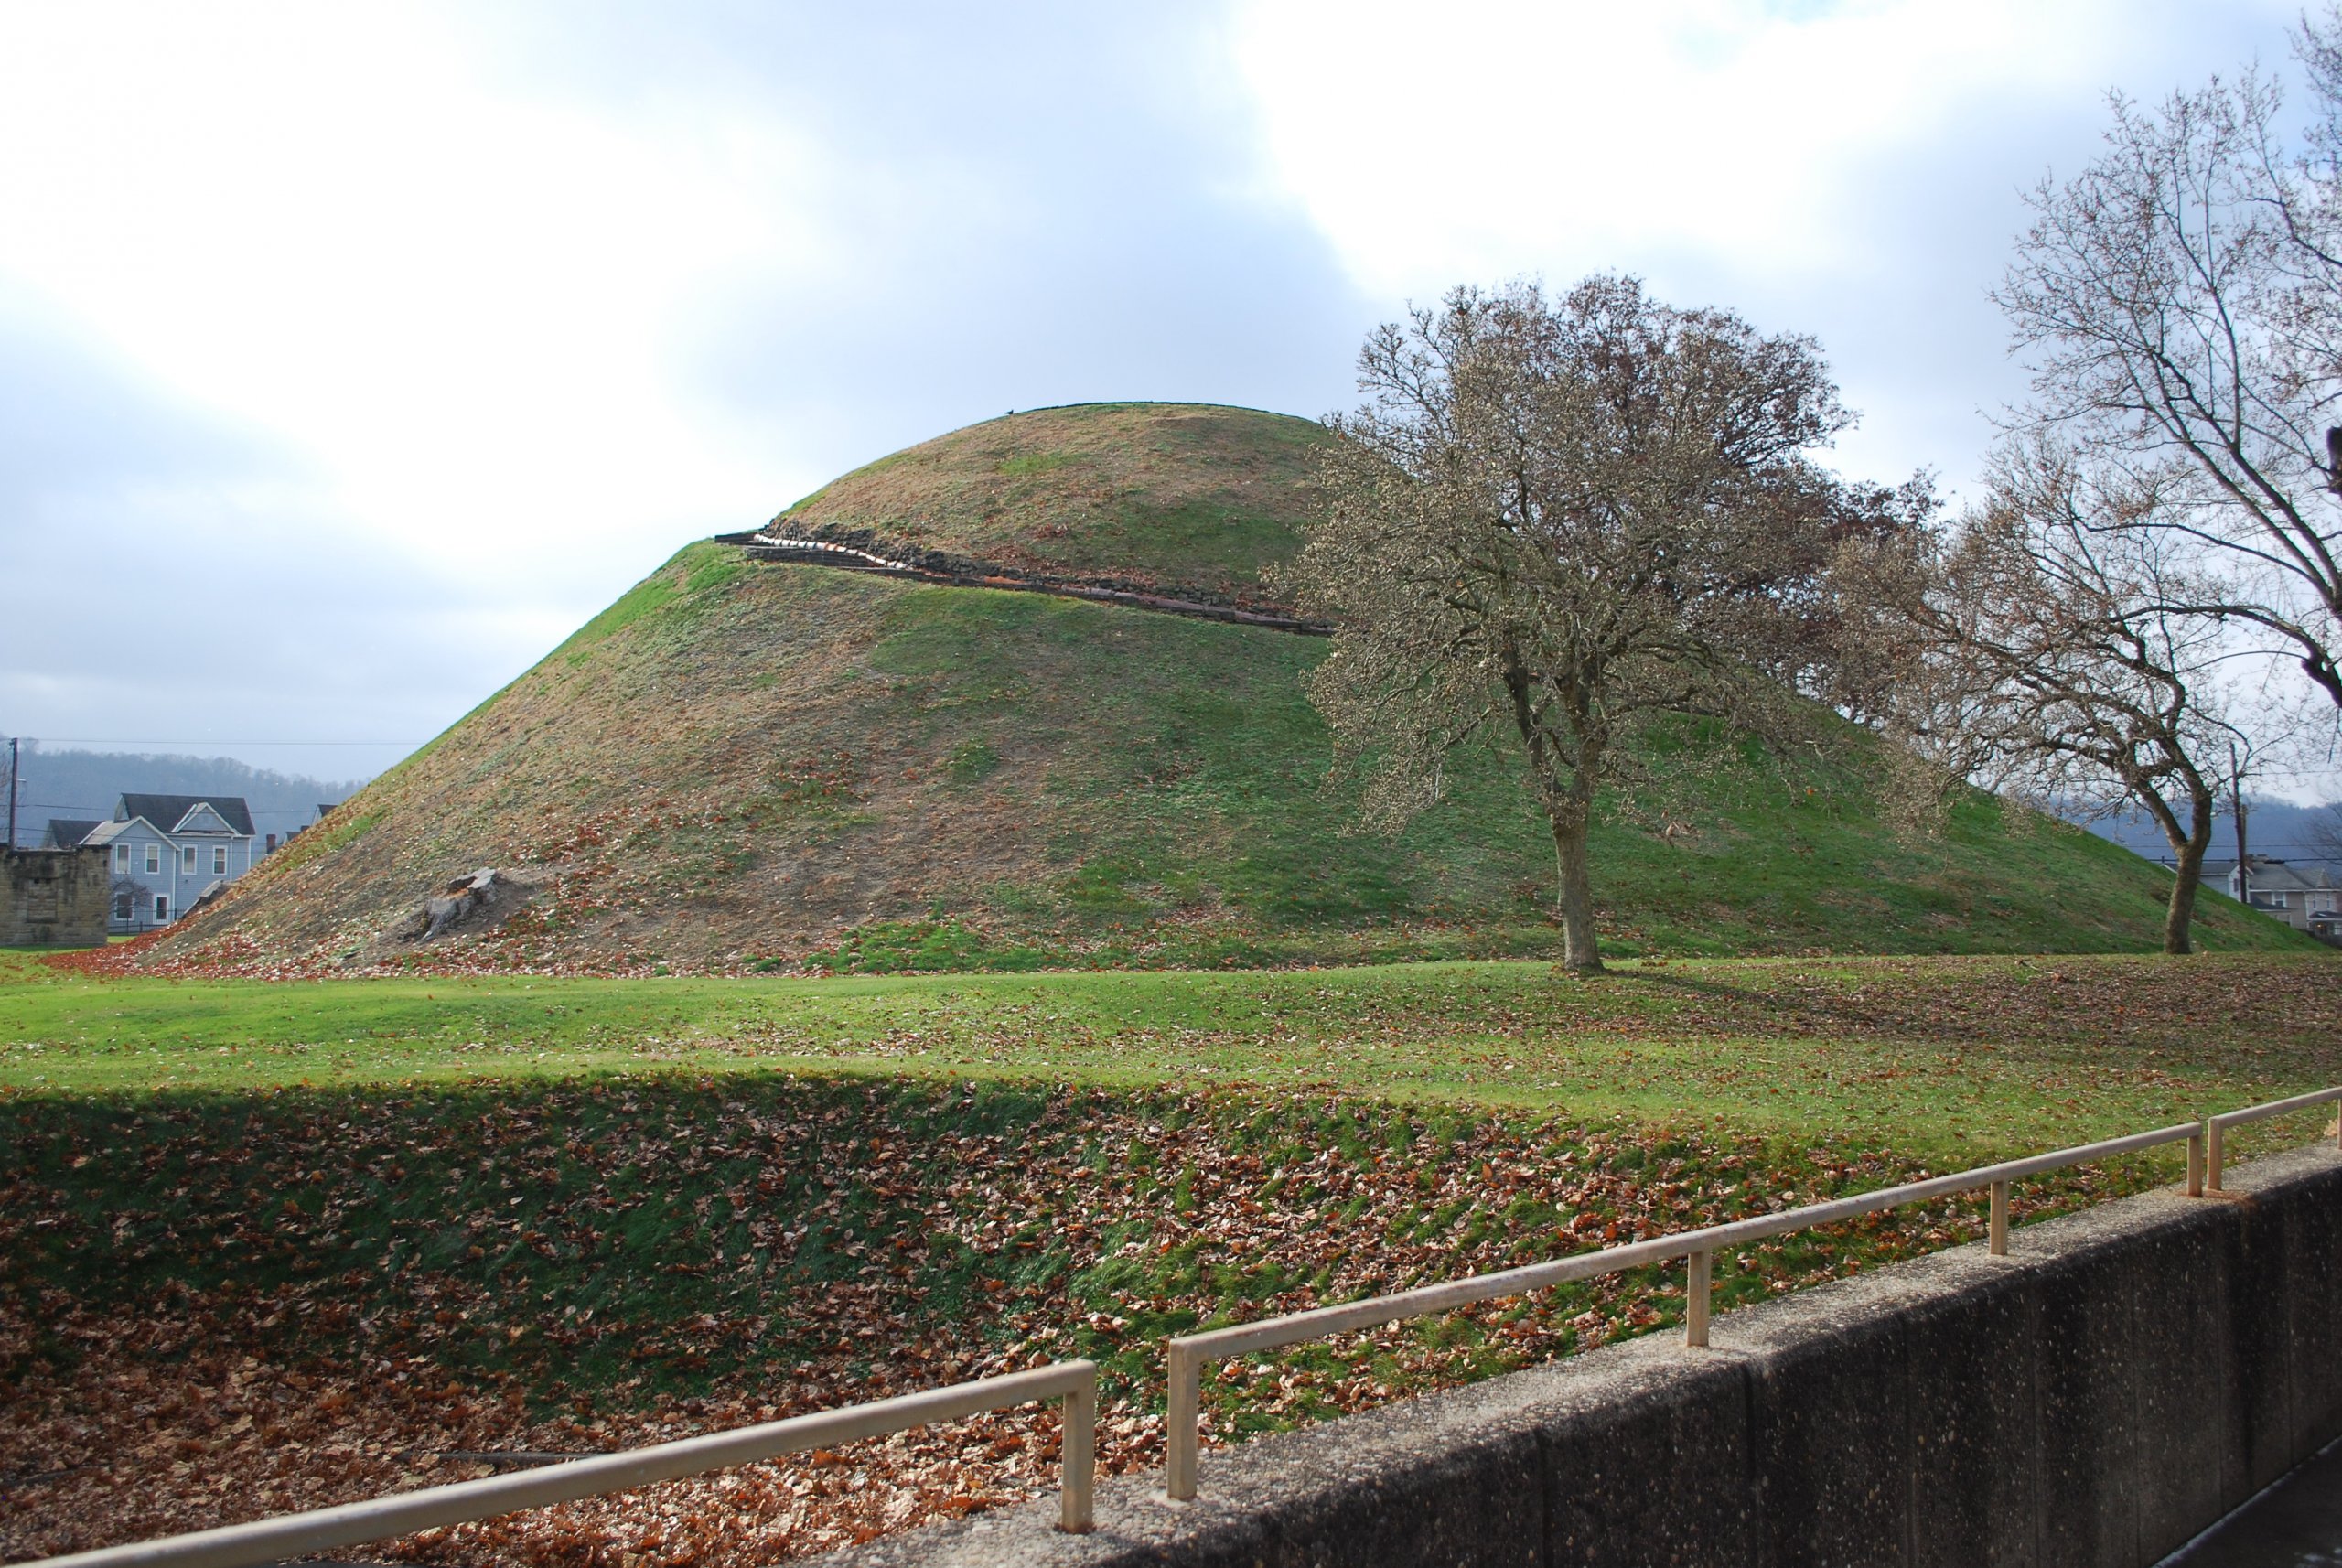 Adena Burial Mound